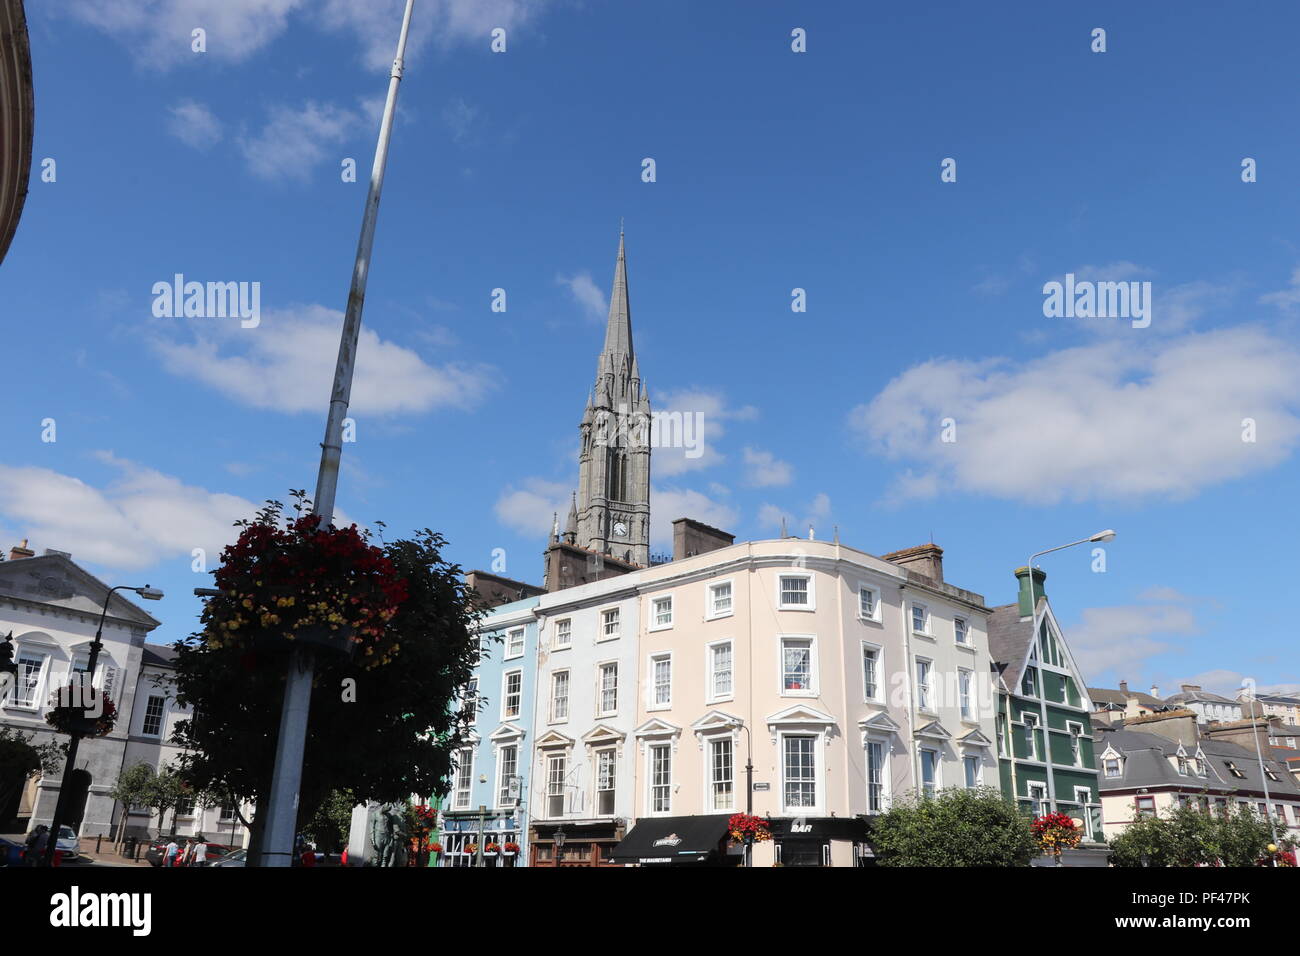 La graziosa cittadina di Cobh, dalla piazza principale, con il magnifico secoli vecchia cattedrale come punto focale. Foto Stock